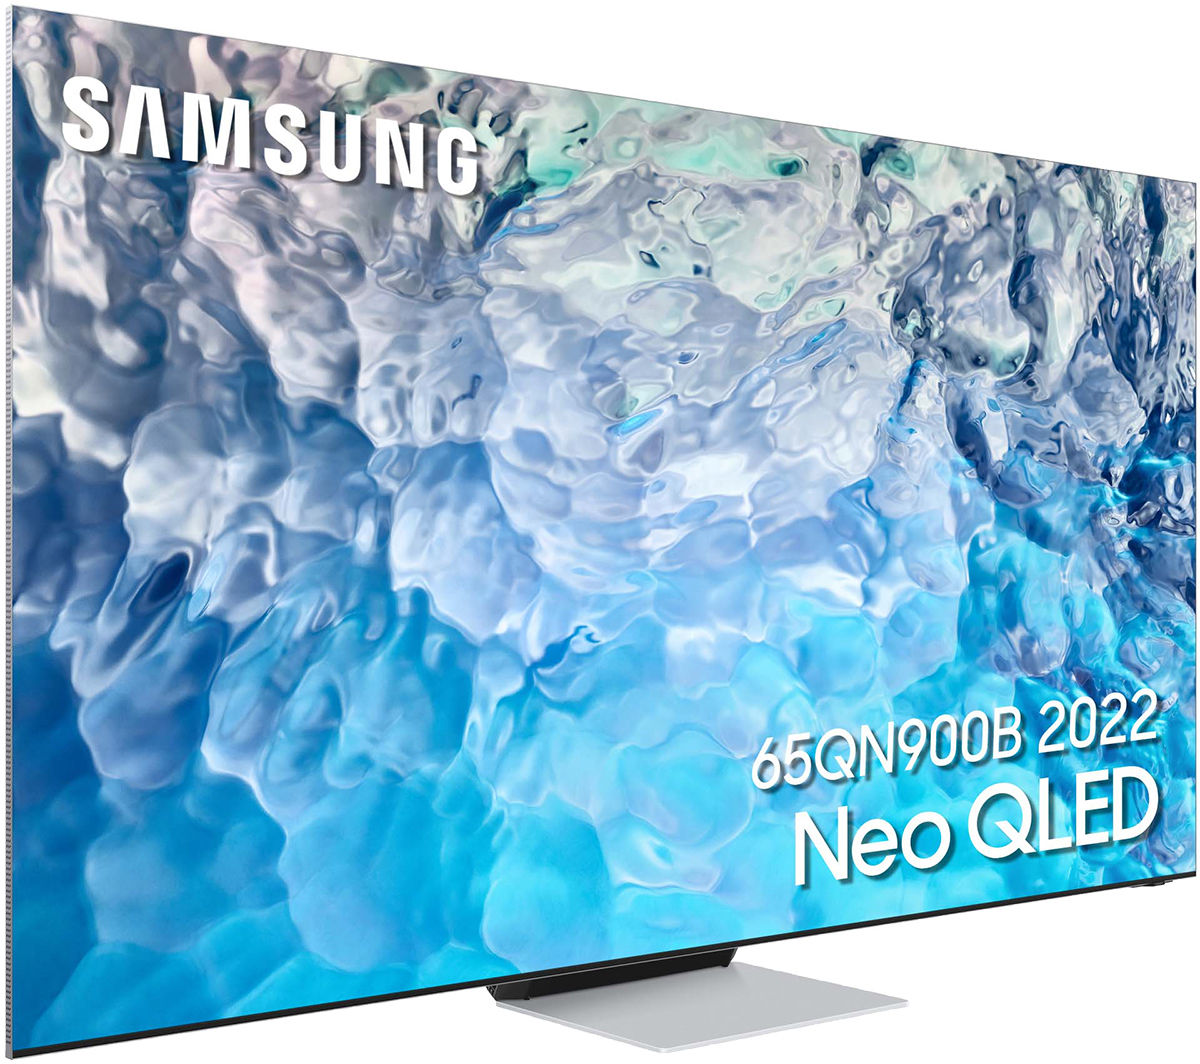 TV Samsung Neo QLED 2022 : les nouvelles gammes en précommande sur  Son-Vidéo.com ! - Son-Vidéo.com le Blog